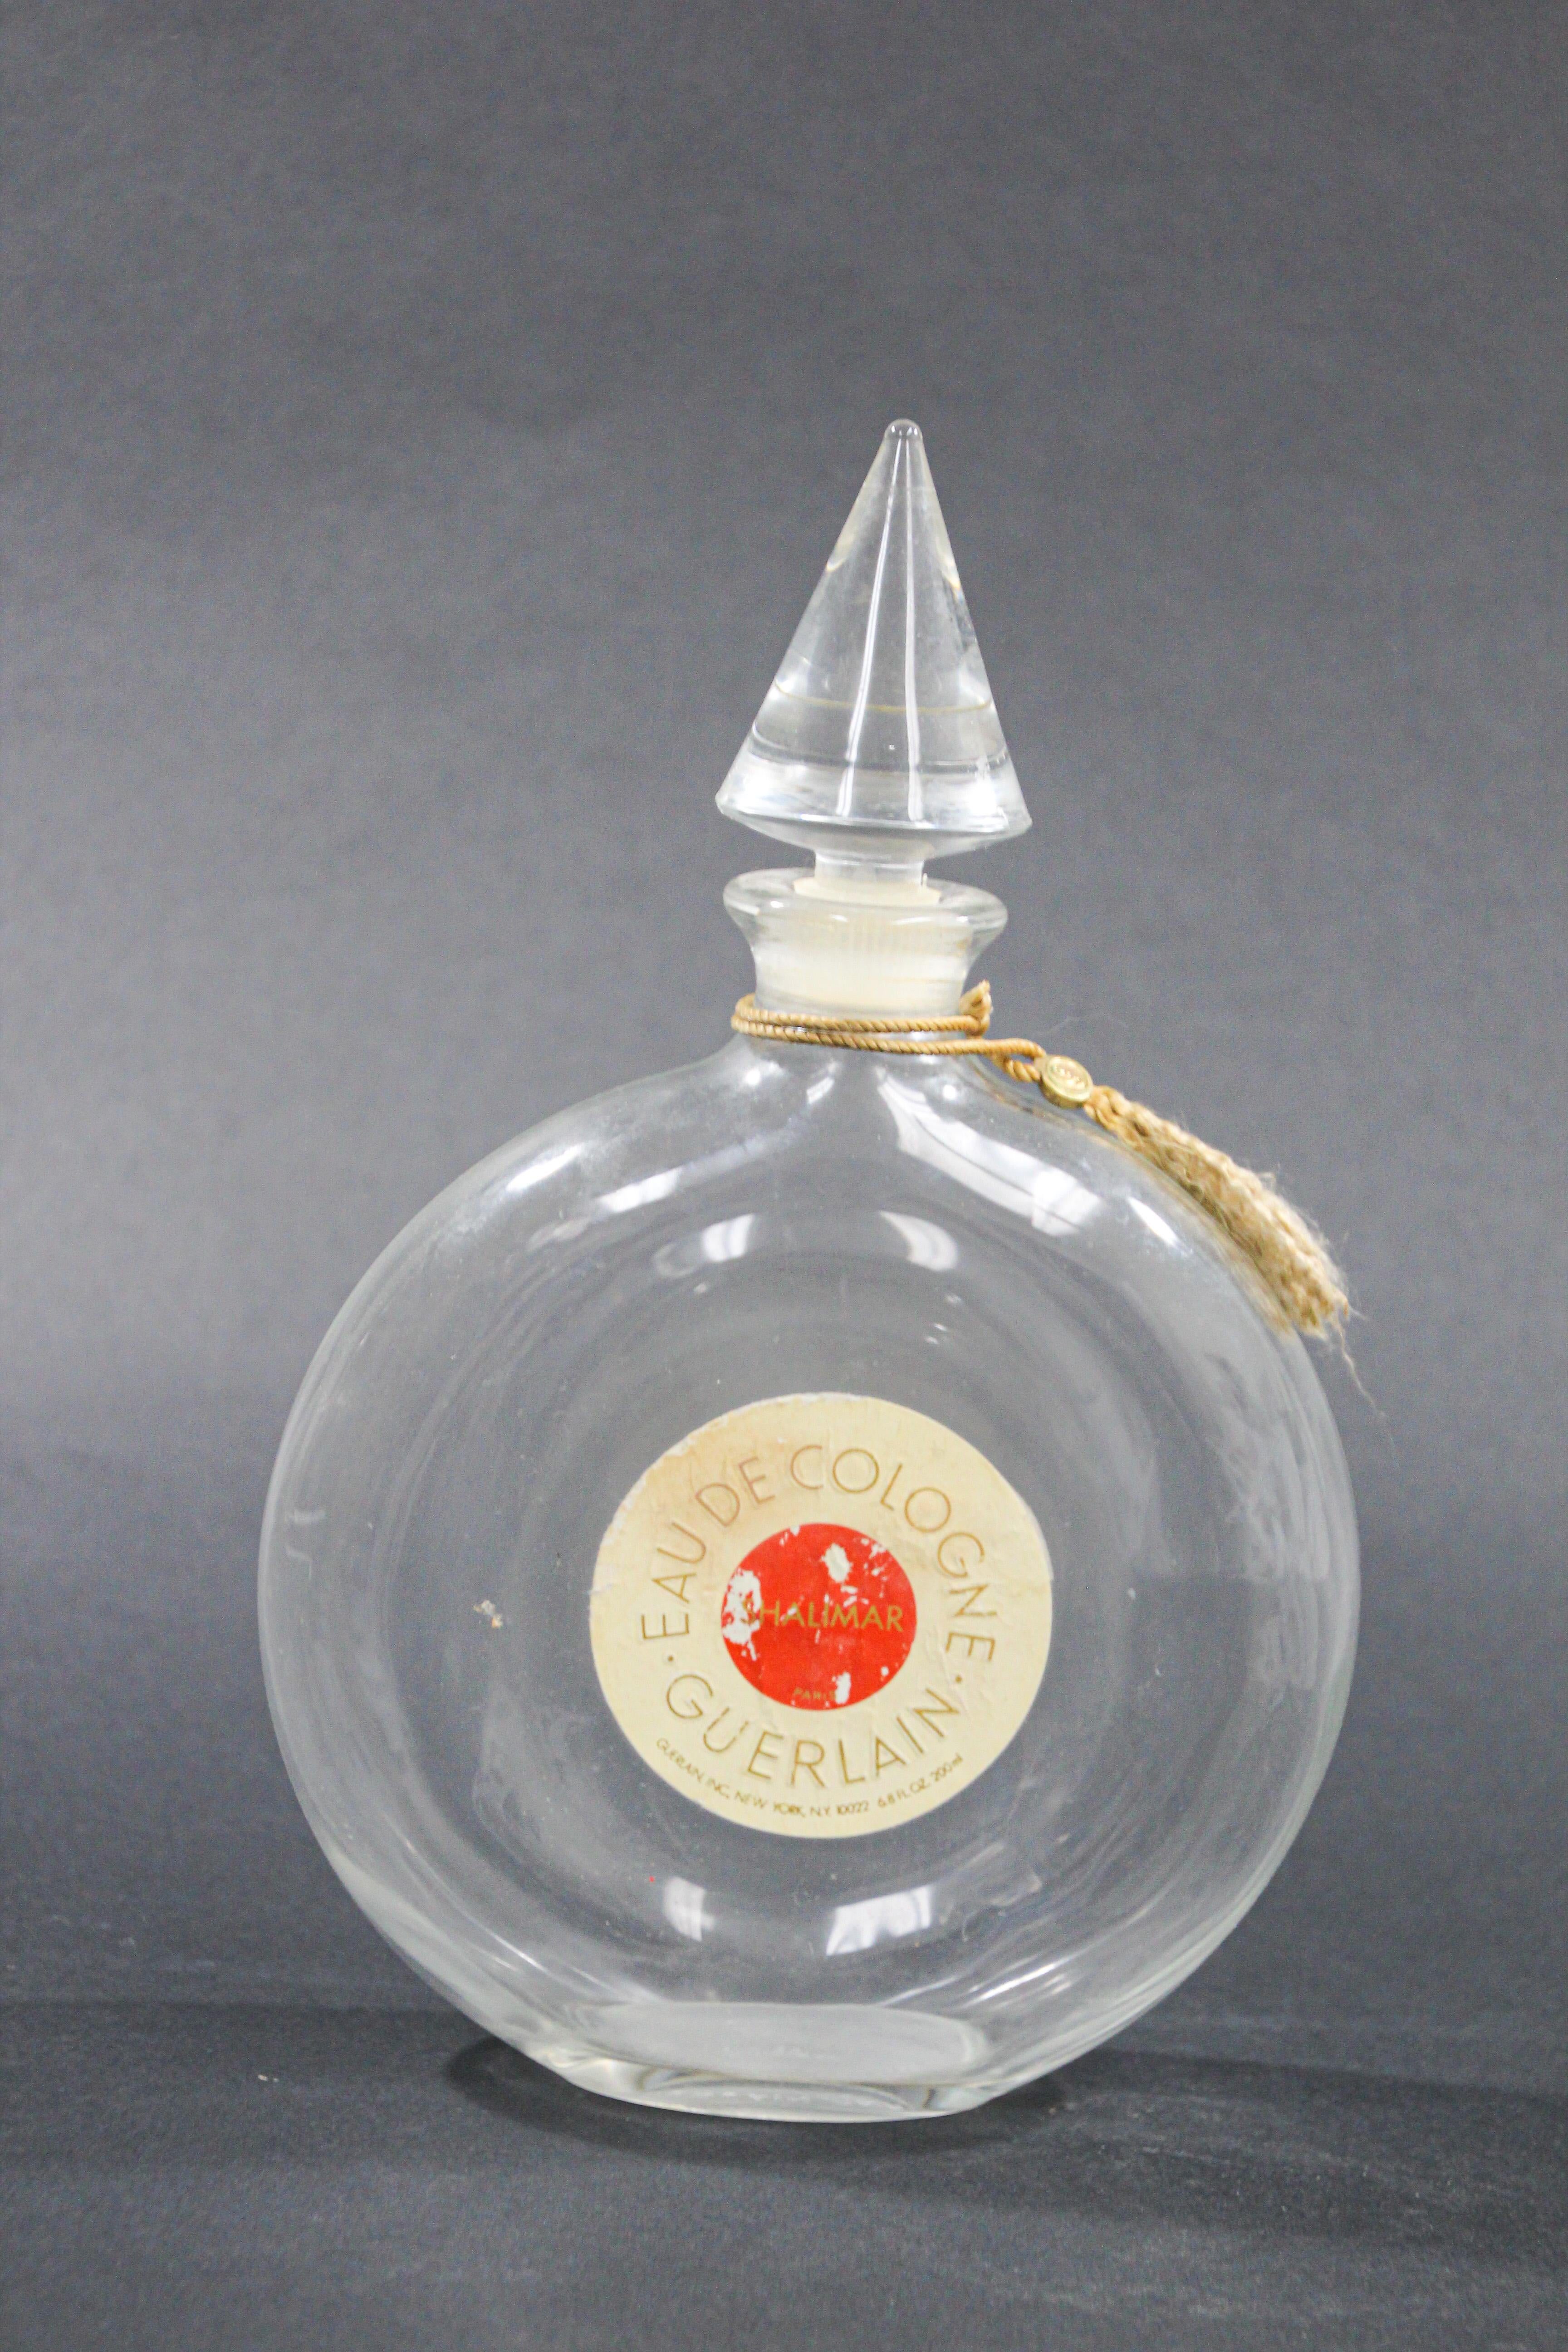 Grand flacon vintage de collection d'eau de cologne Guerlain Shalimar.
Flacon vide en verre de collection du célèbre parfum Shalimar.
Le parfum Shalimar a été créé en 1925 par la maison de parfumerie Guerlain, il est classé parmi les parfums